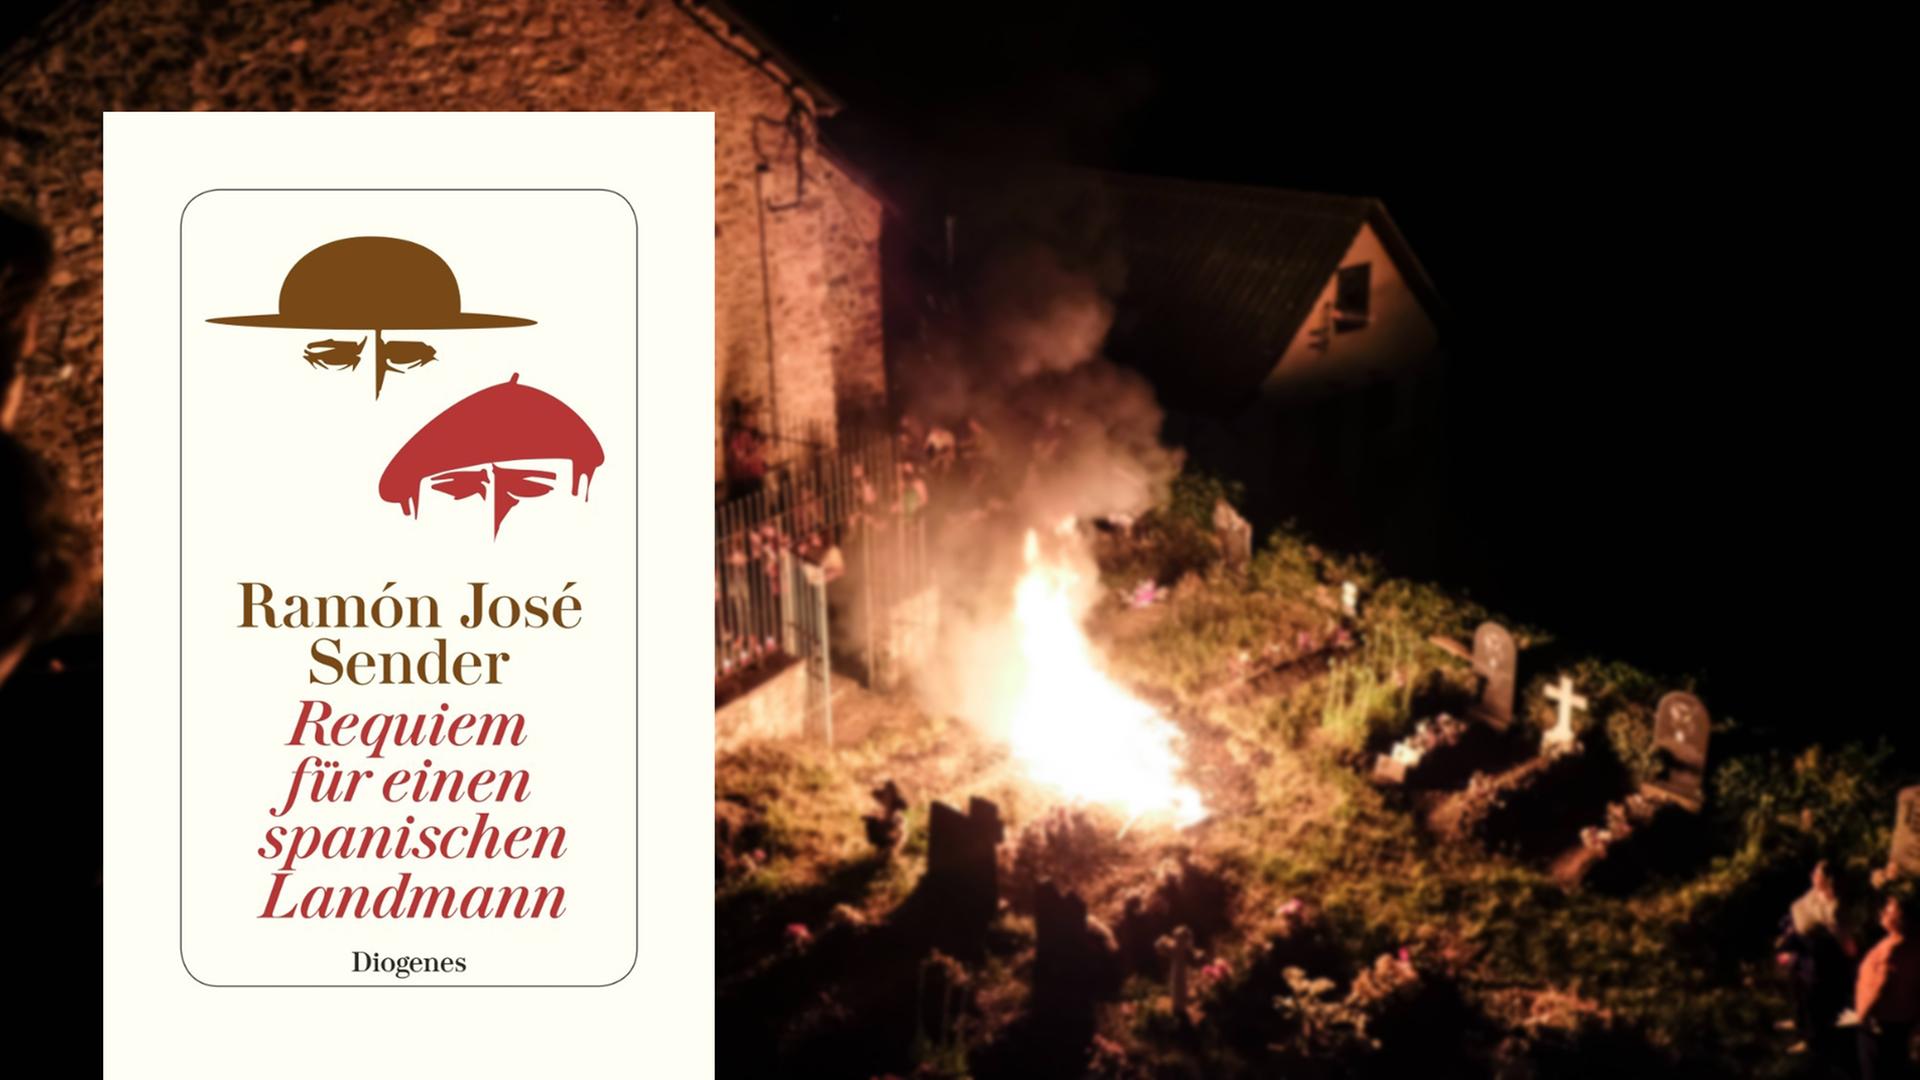 Cover von Ramón José Sender: "Requiem für einen spanischen Landmann"; im Hintergrund ist ein Feuer auf einem Friedhof im Norden Spaniens zu sehen